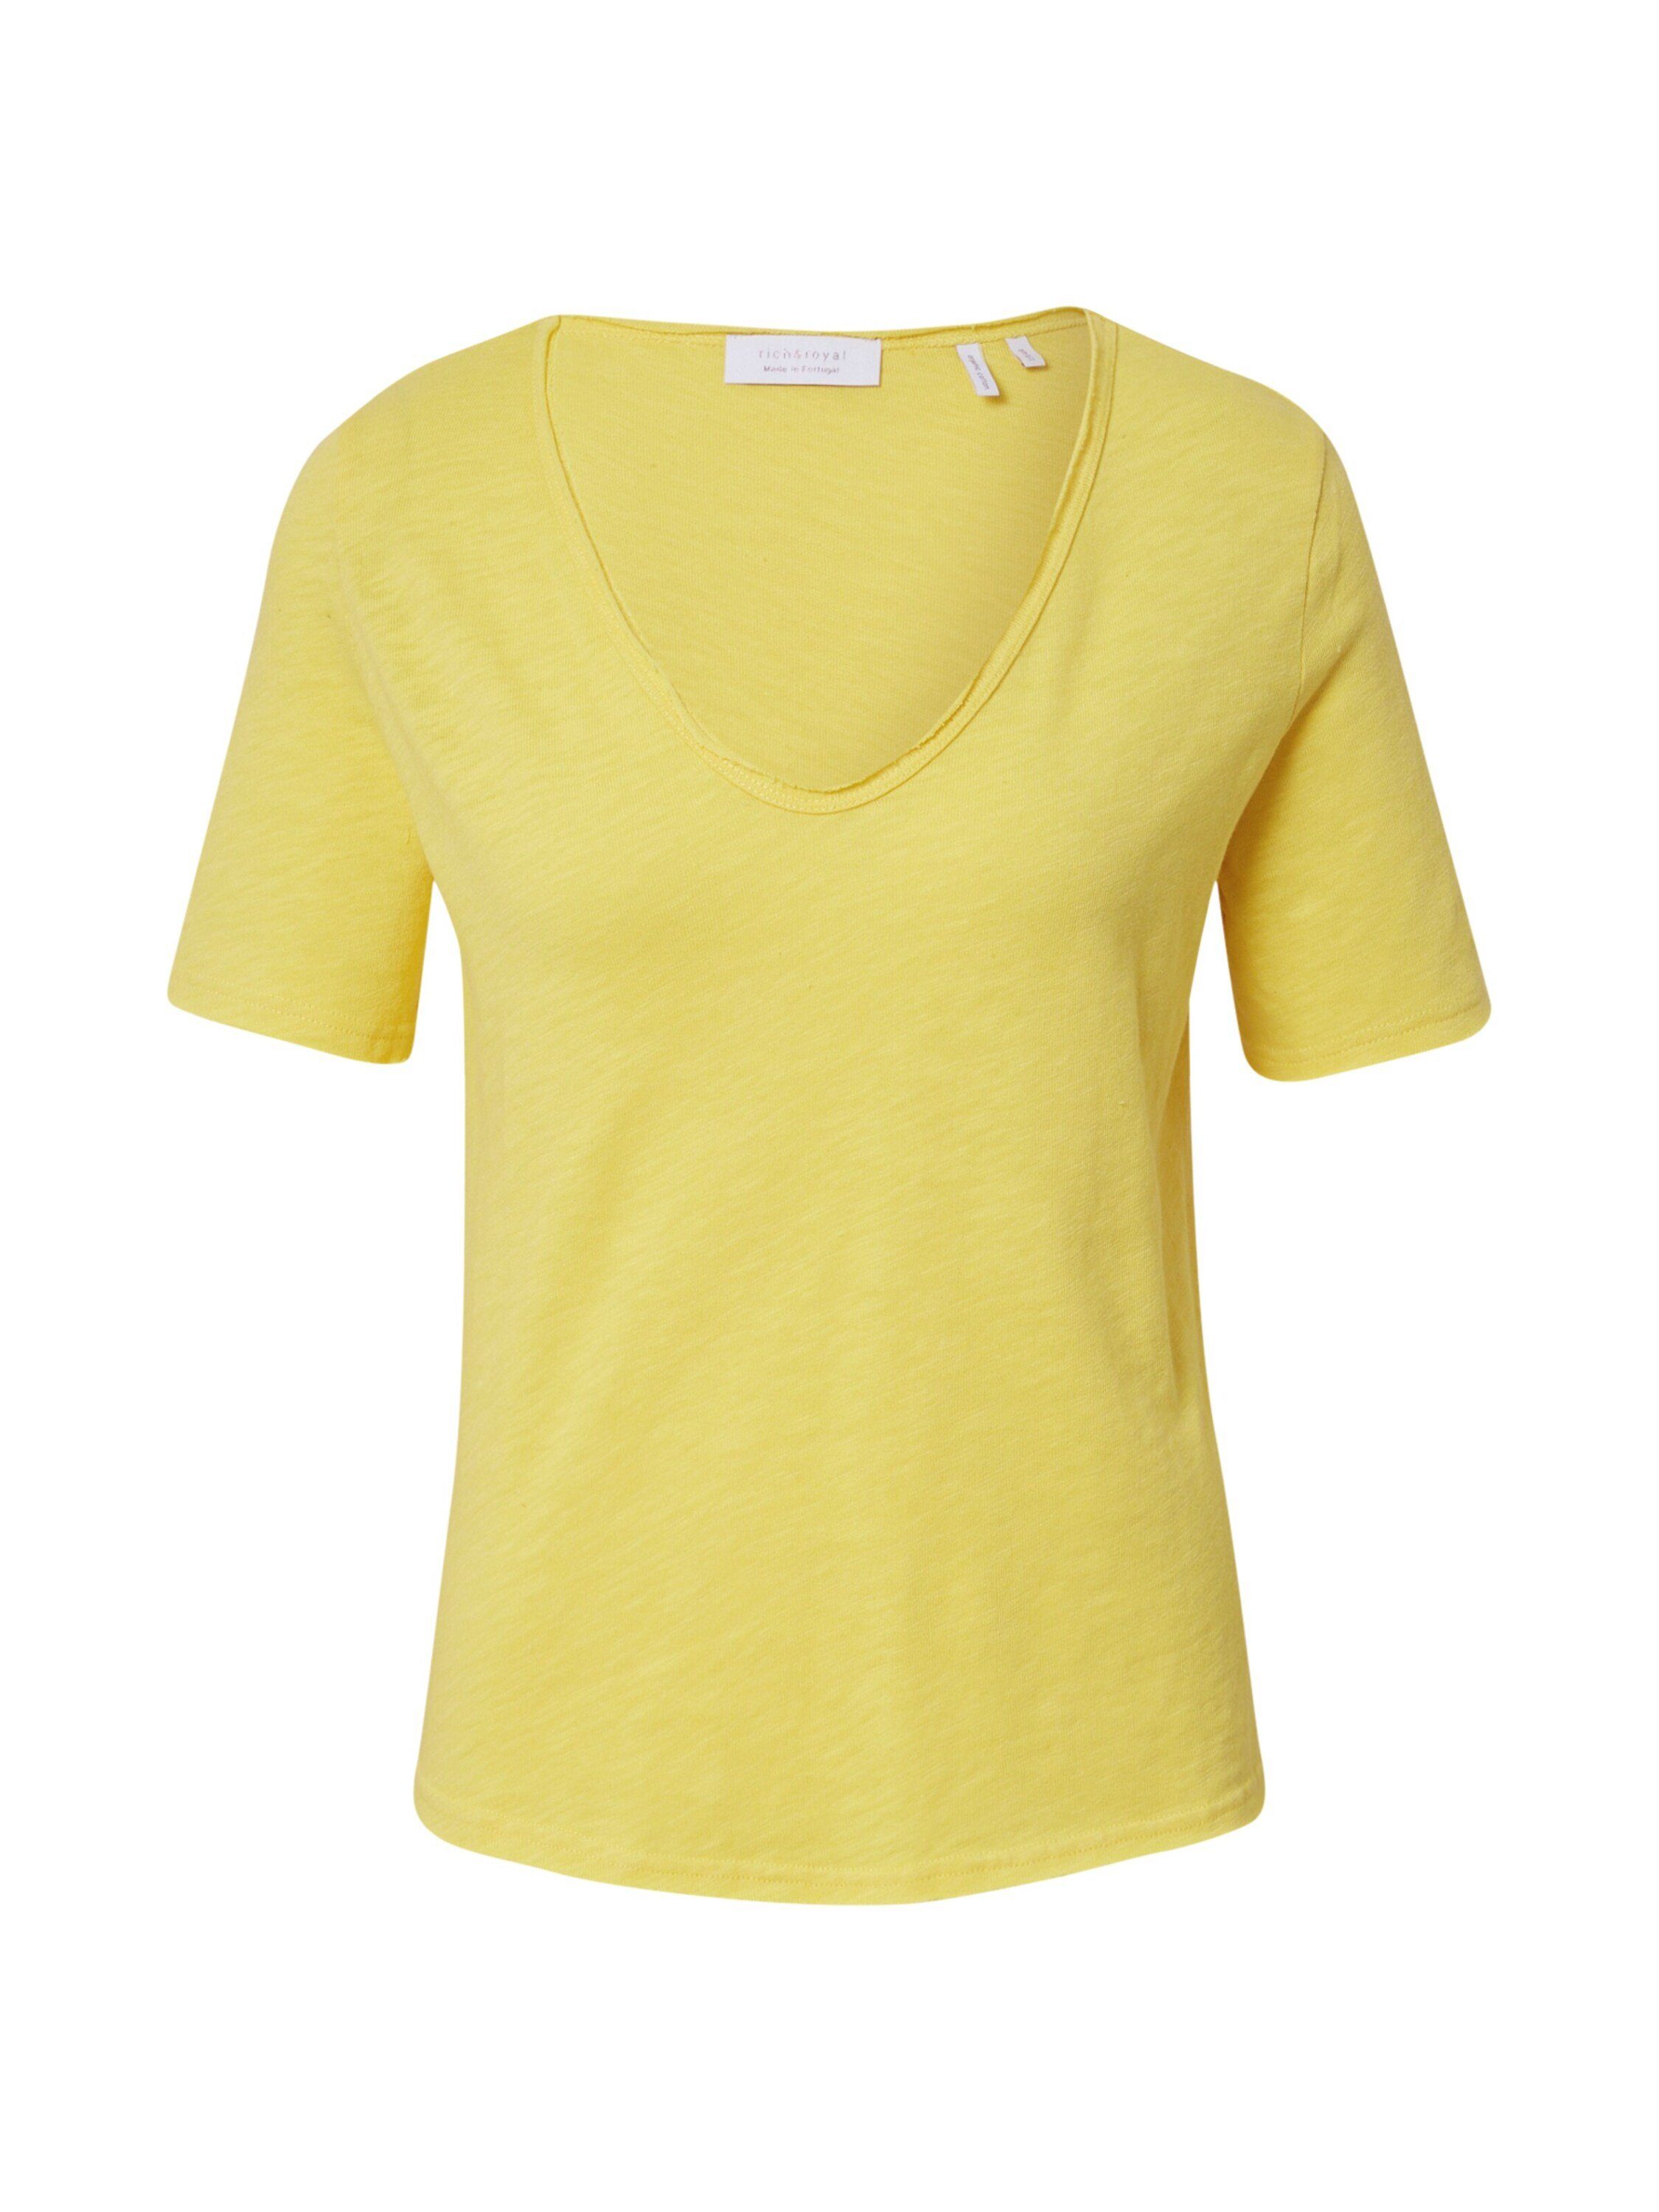 Kleinigkeit Shirts für Damen | OTTO online kaufen